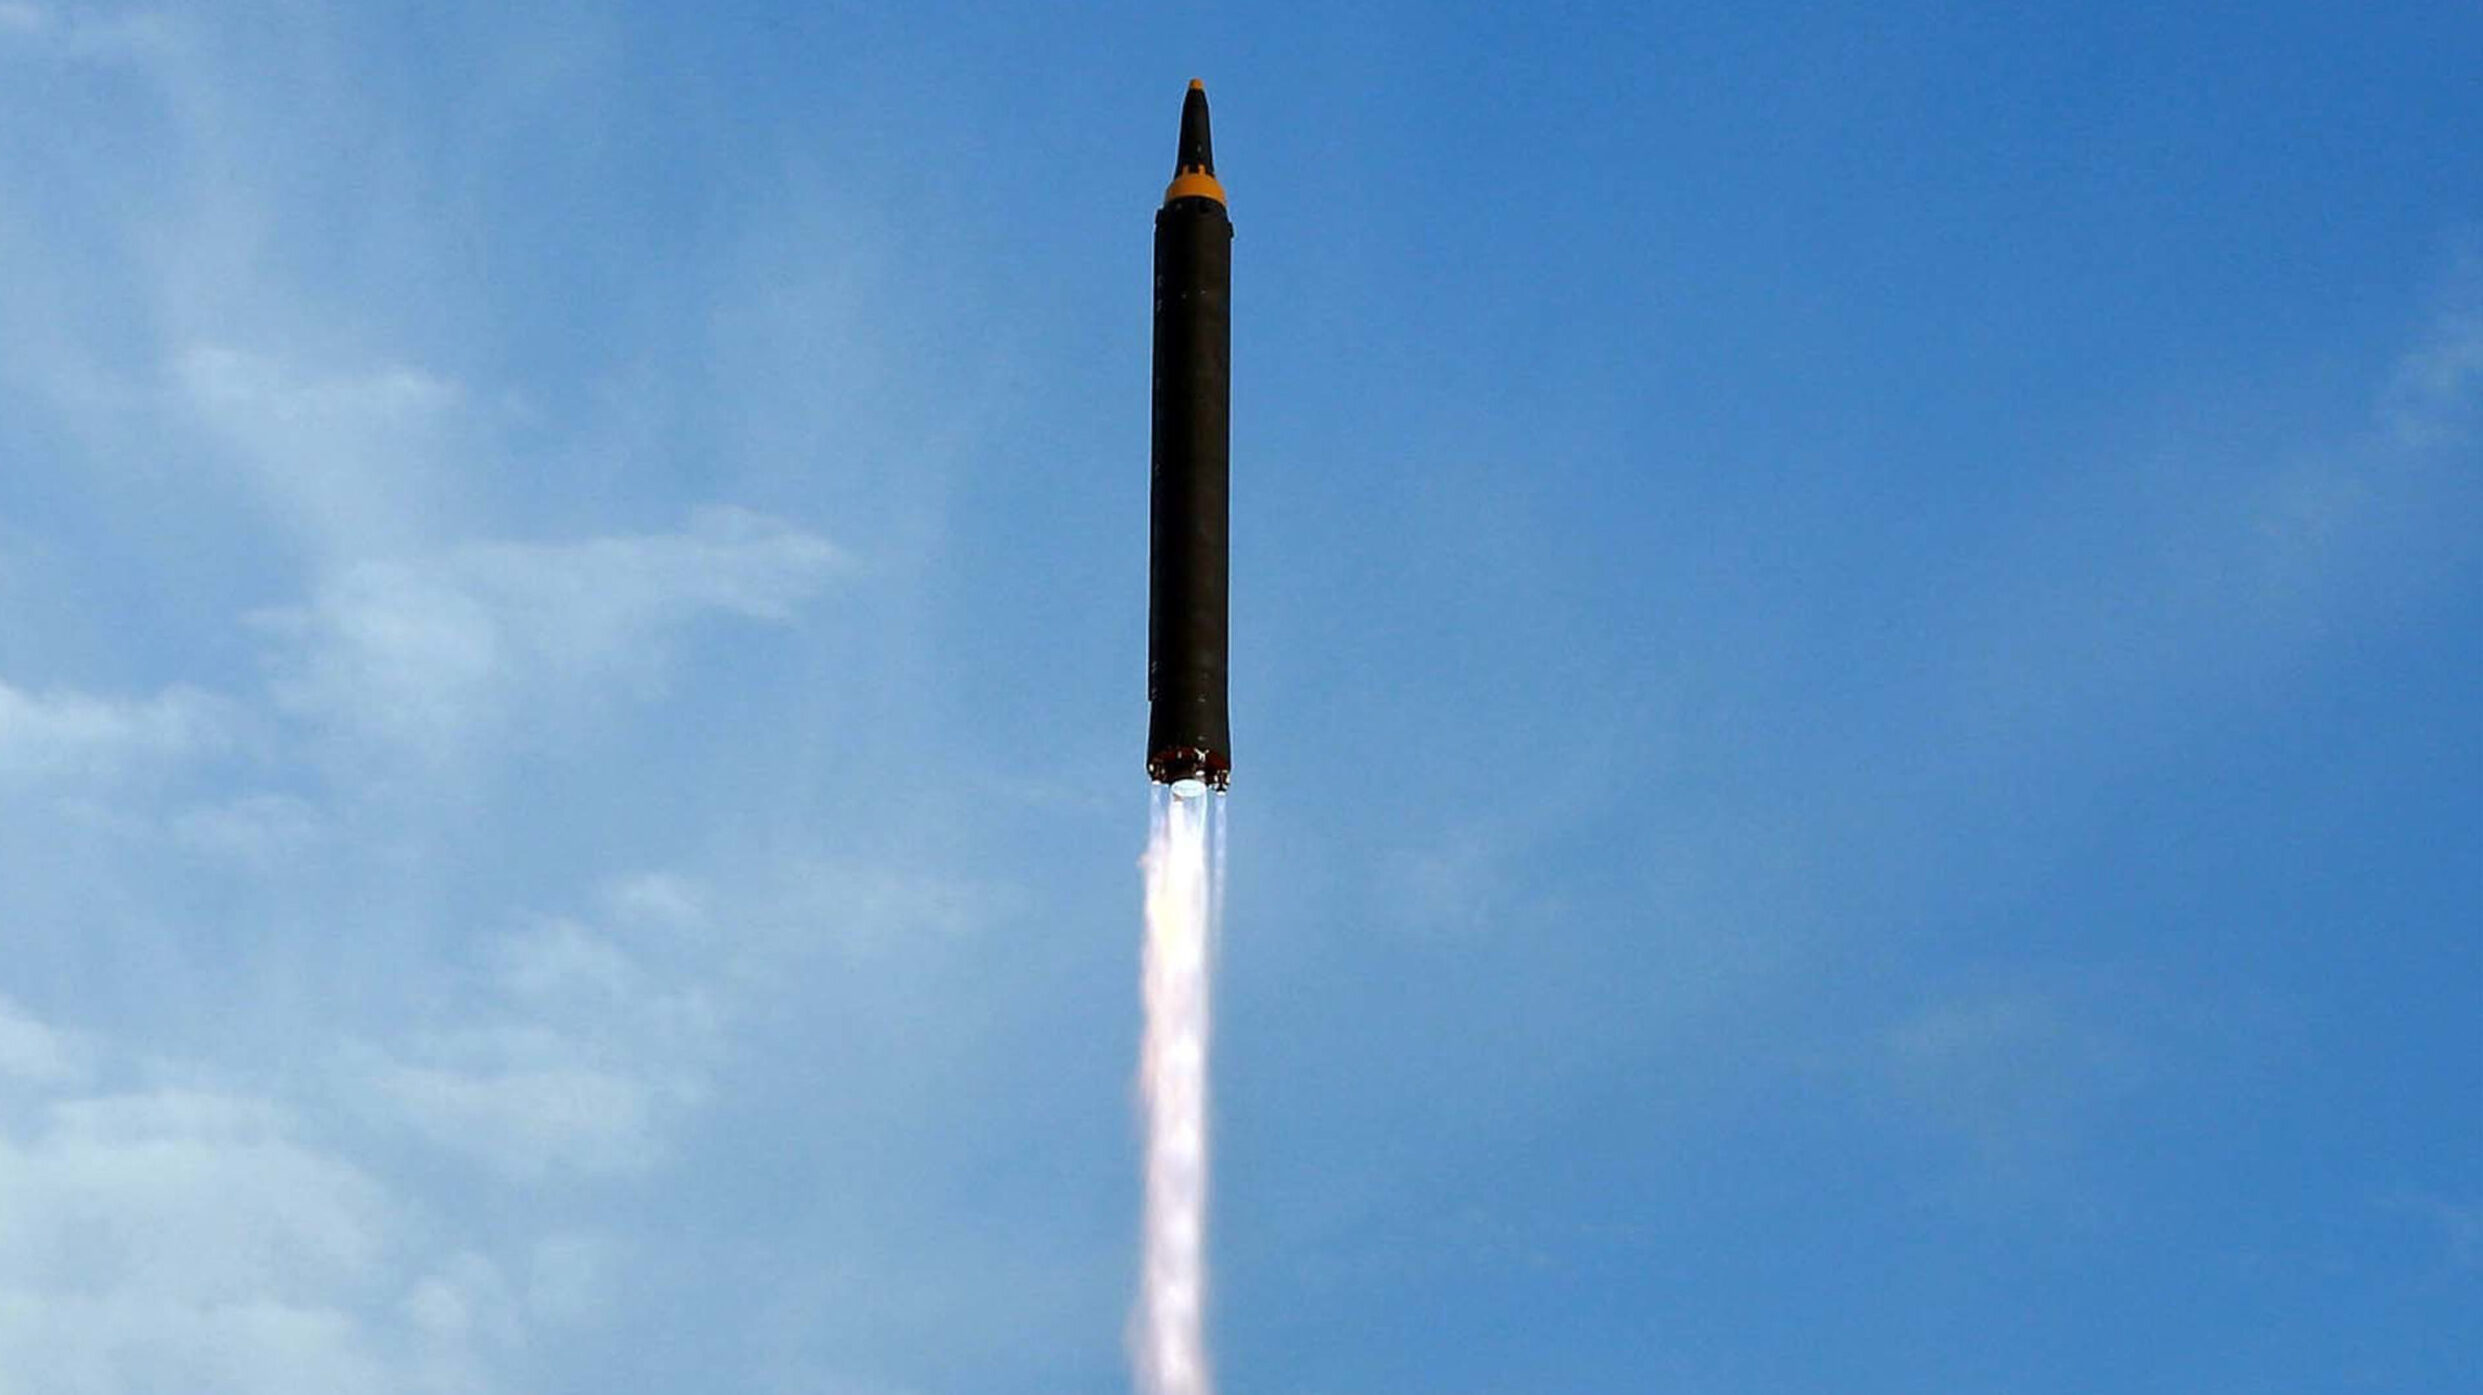 Β. Κορέα: Εκτόξευσε βαλλιστικό πύραυλο για να θέσει στρατιωτικό δορυφόρο σε τροχιά – Κατεπείγουσα προειδοποίηση από Ν. Κορέα και Ιαπωνία